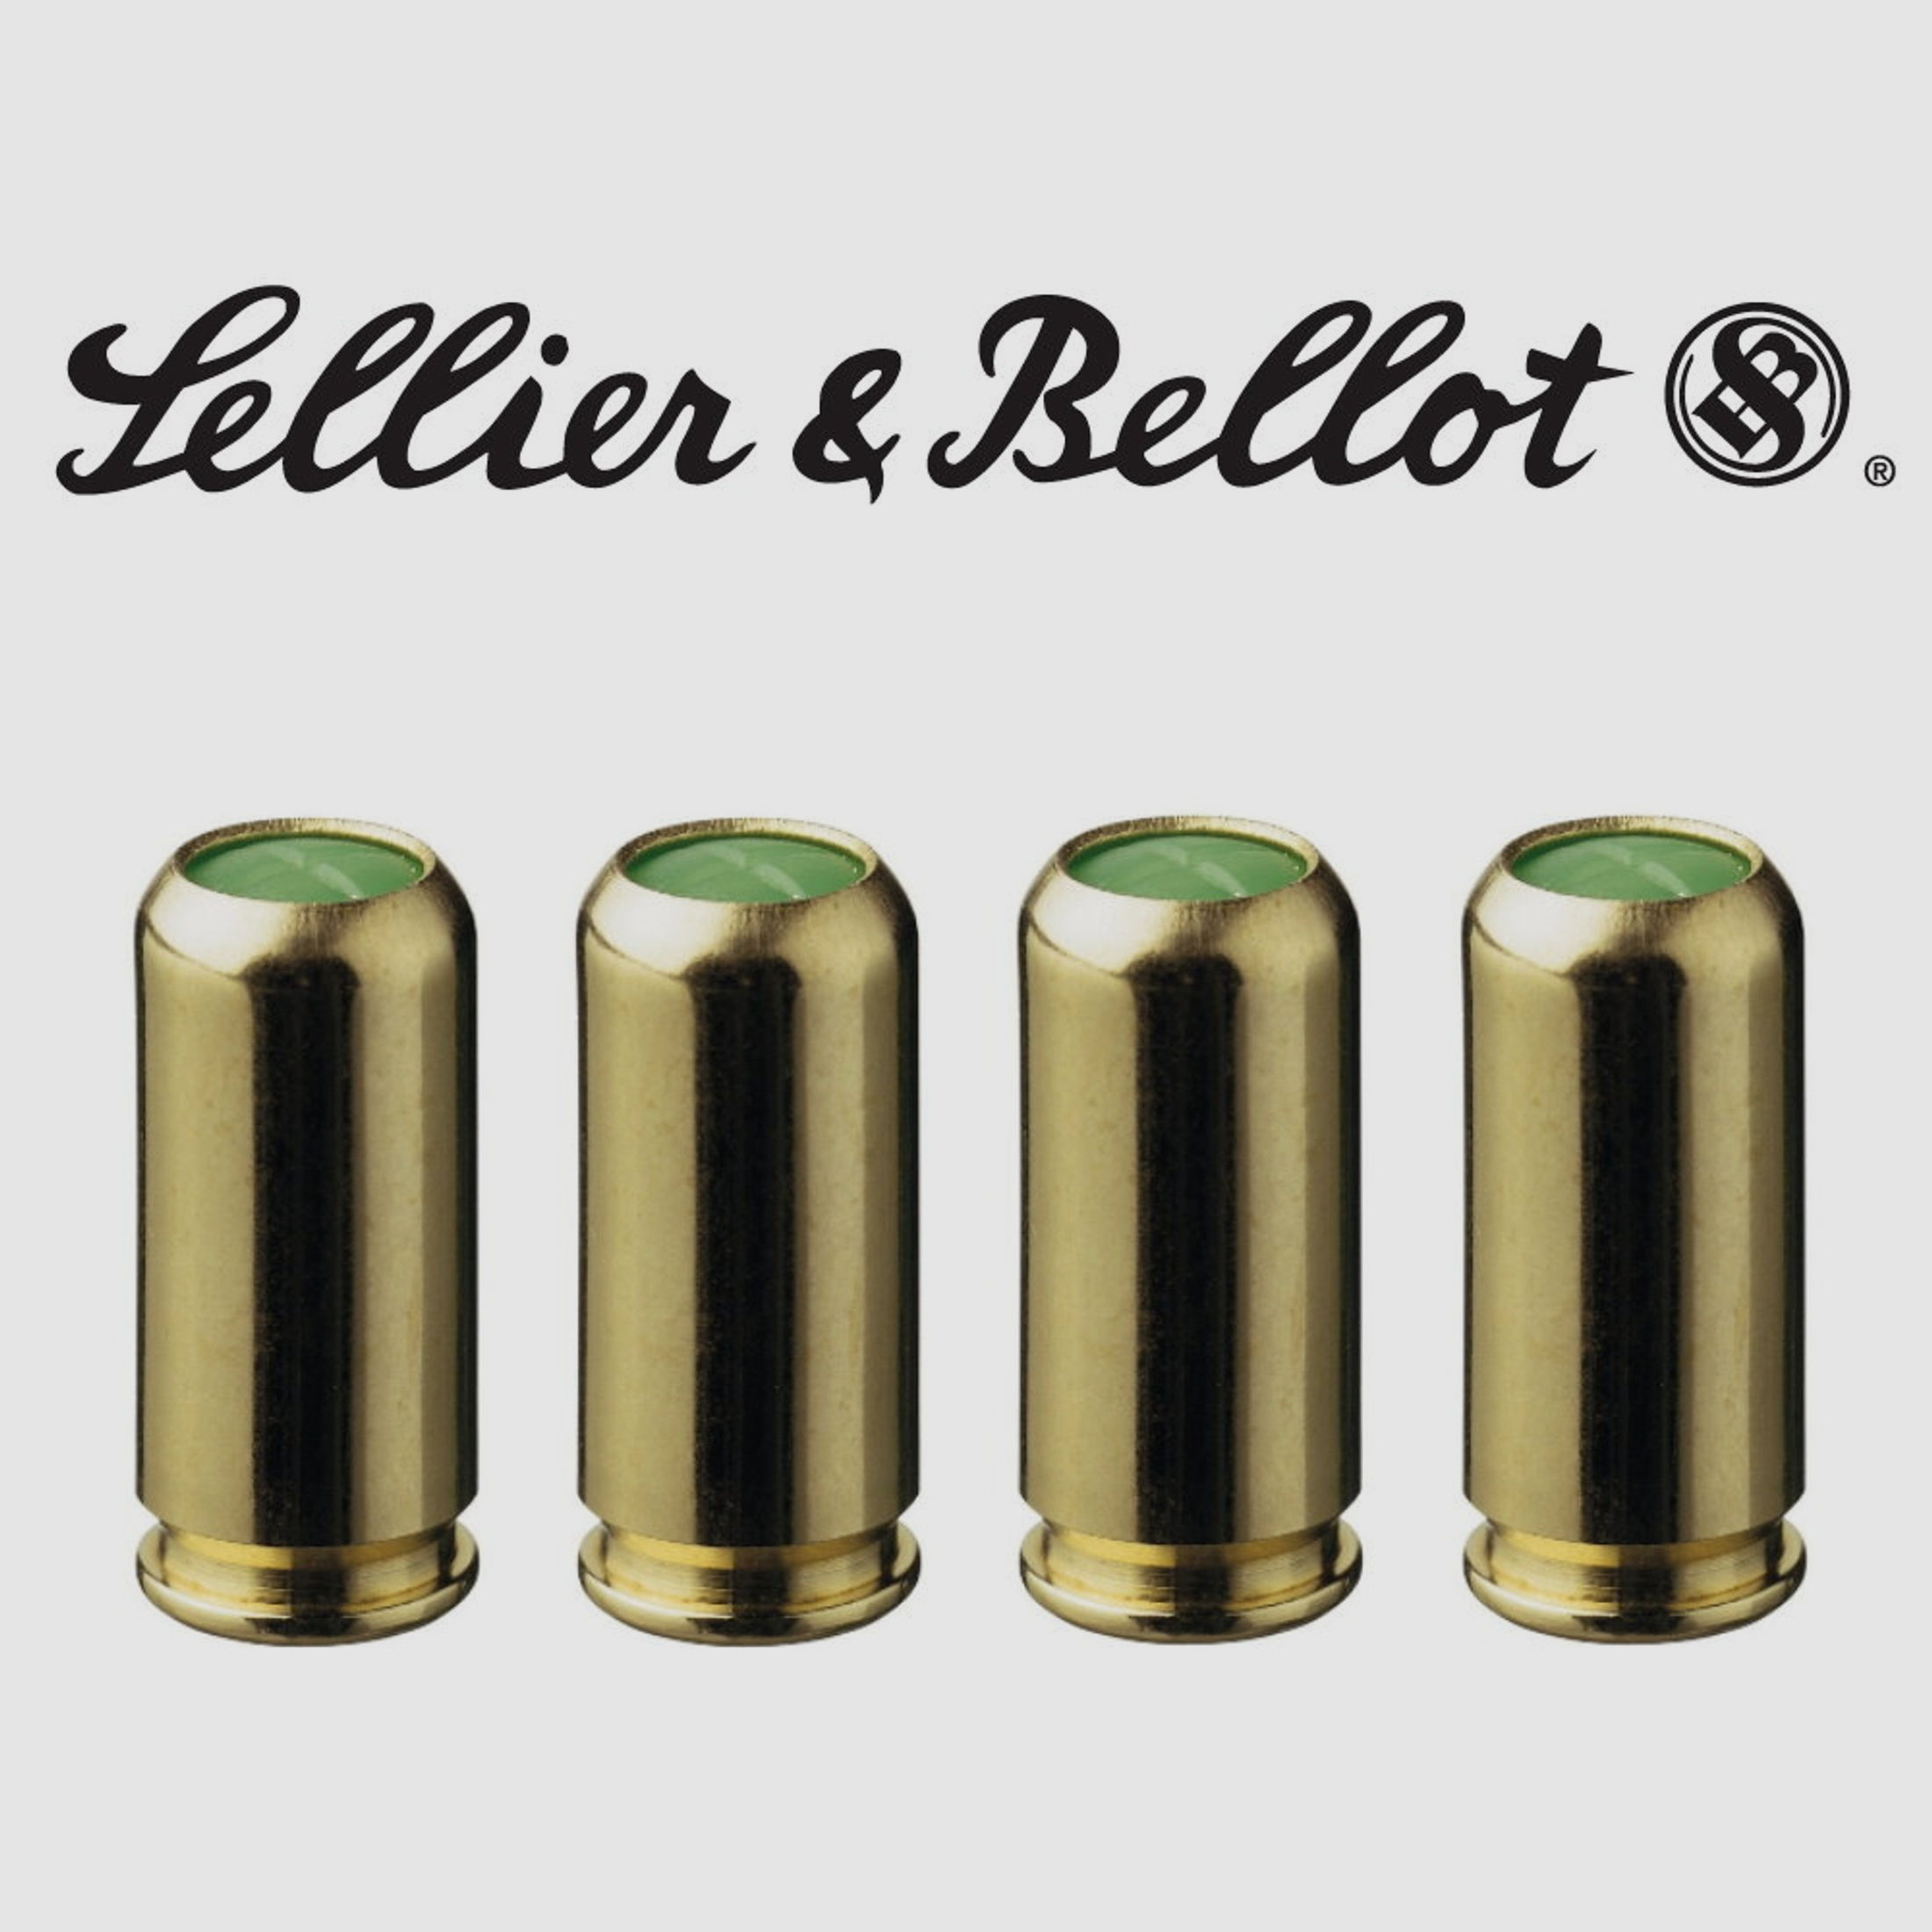 Seller Bellot KNALLPATRONEN, 9 mm P.A.K. für Pistolen